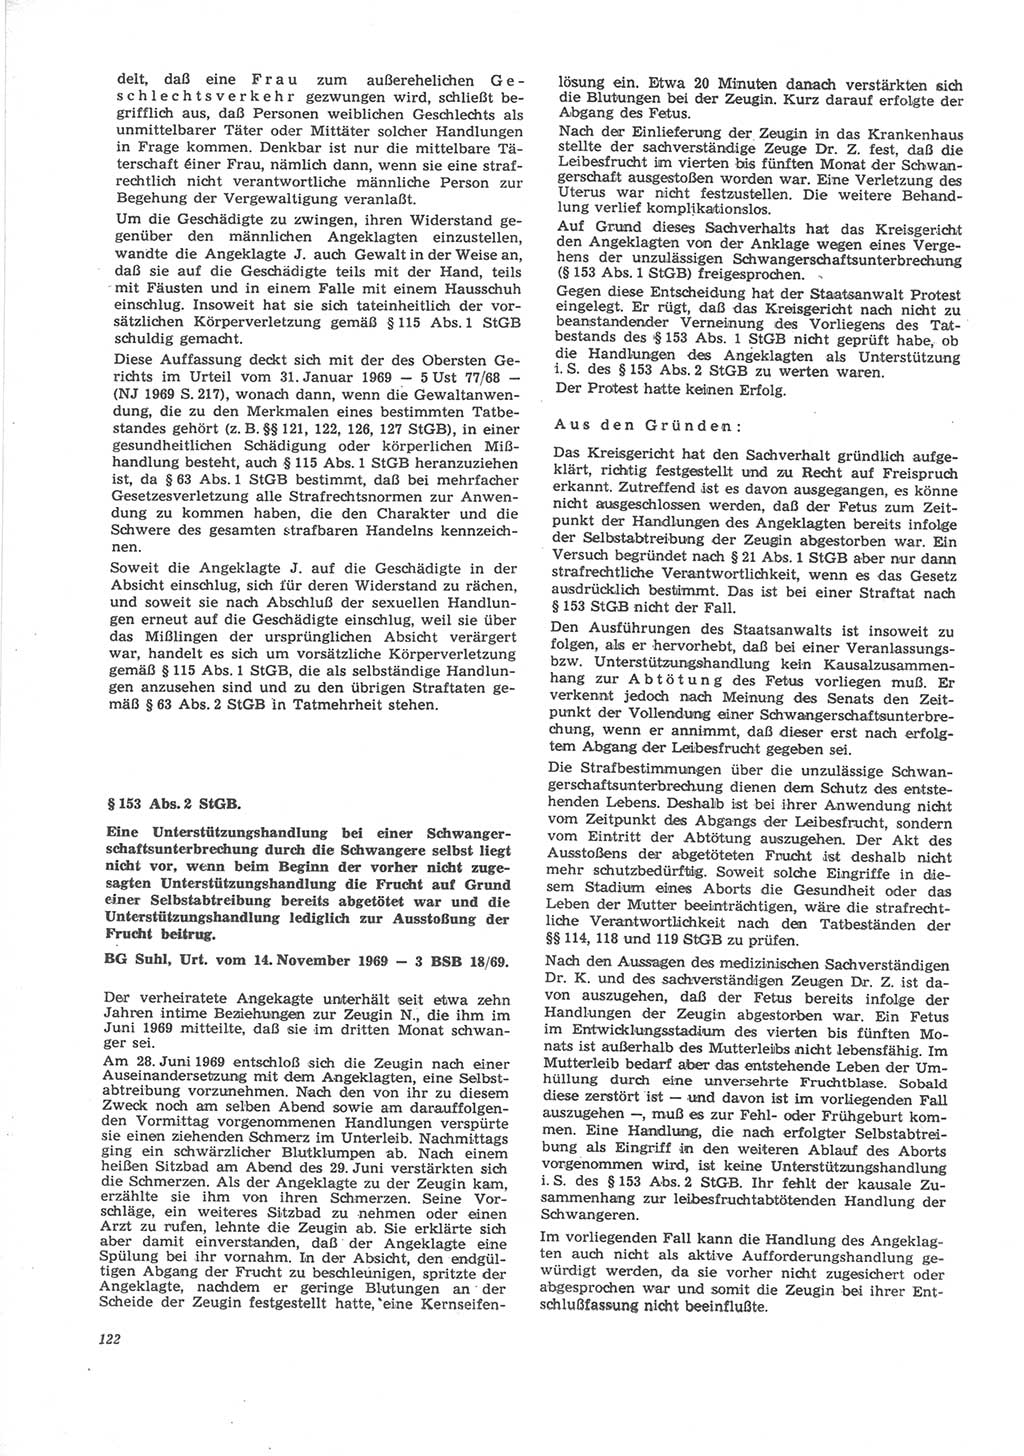 Neue Justiz (NJ), Zeitschrift für Recht und Rechtswissenschaft [Deutsche Demokratische Republik (DDR)], 24. Jahrgang 1970, Seite 122 (NJ DDR 1970, S. 122)